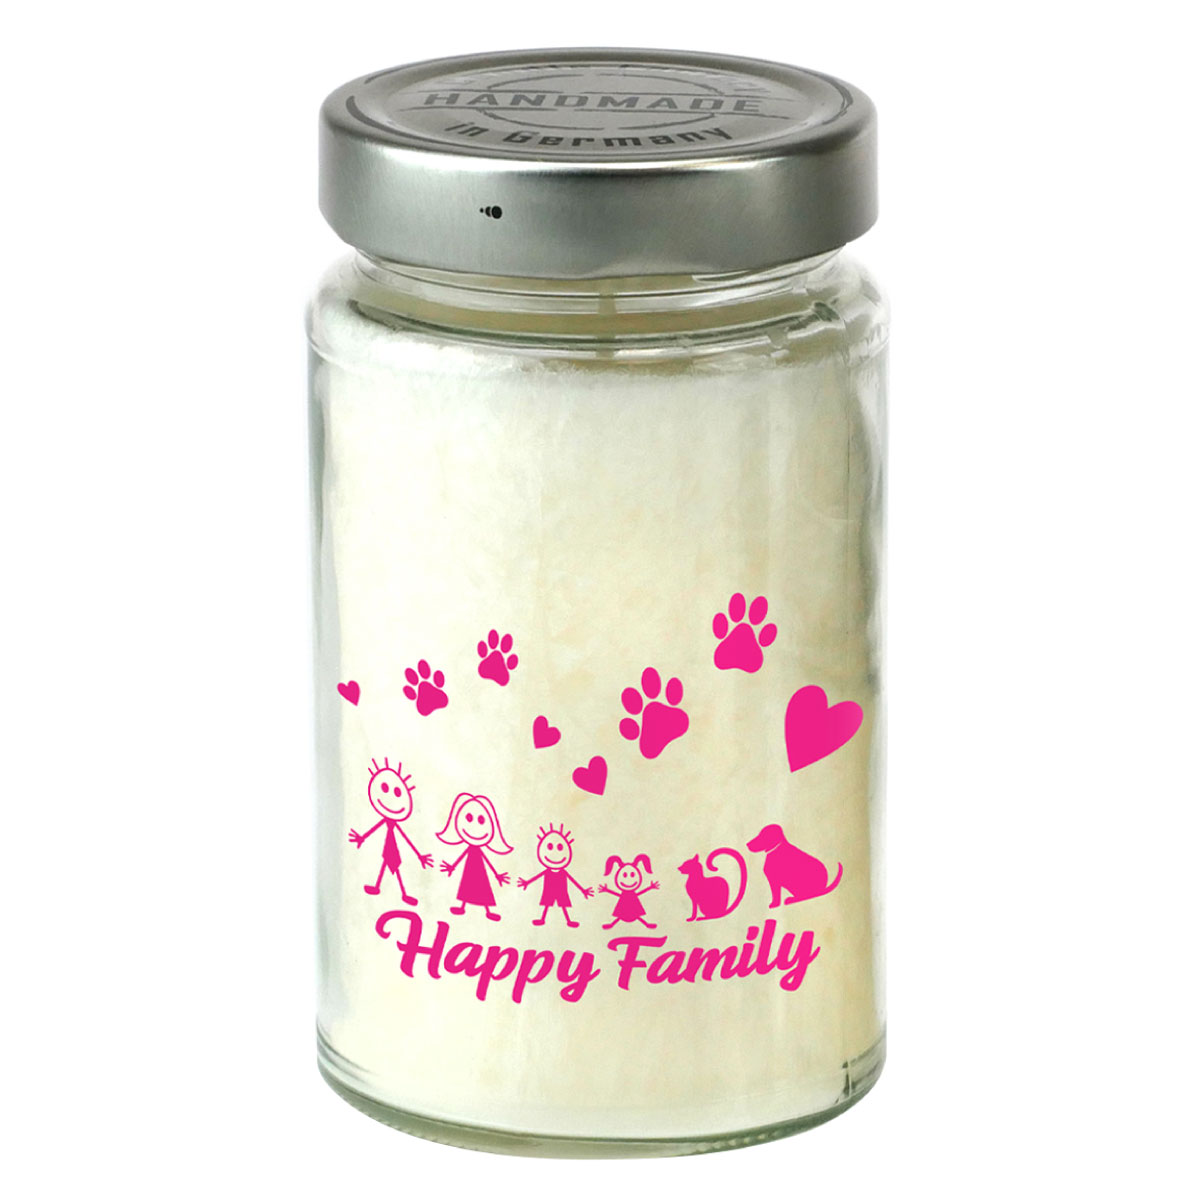 Happy Family - Bedruckte Duftkerze im Glas [groß]